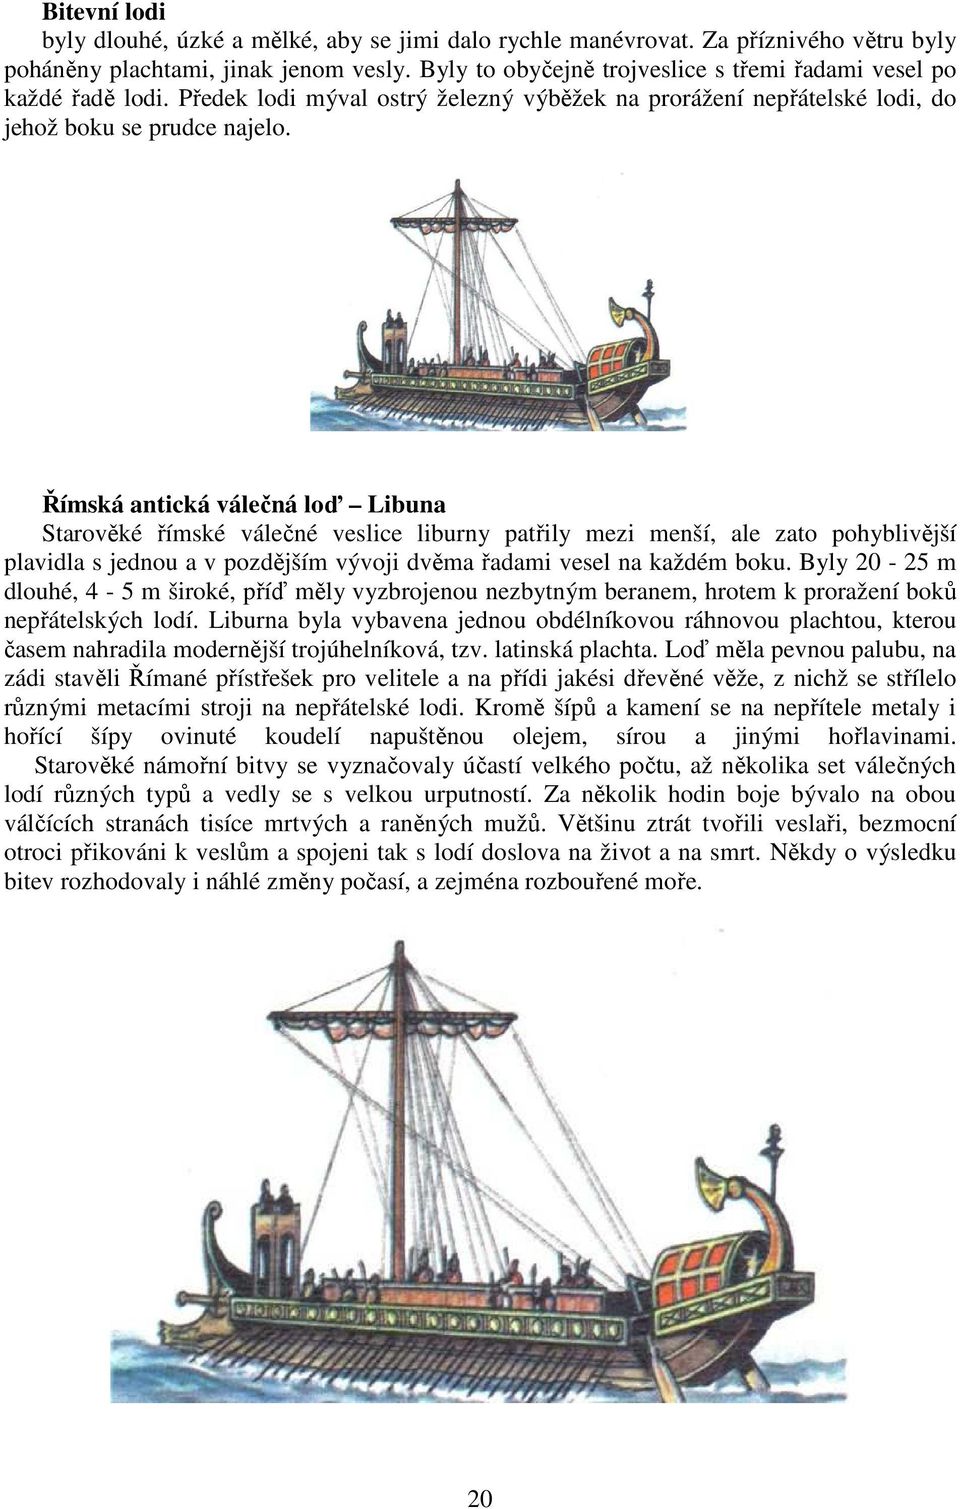 Římská antická válečná loď Libuna Starověké římské válečné veslice liburny patřily mezi menší, ale zato pohyblivější plavidla s jednou a v pozdějším vývoji dvěma řadami vesel na každém boku.